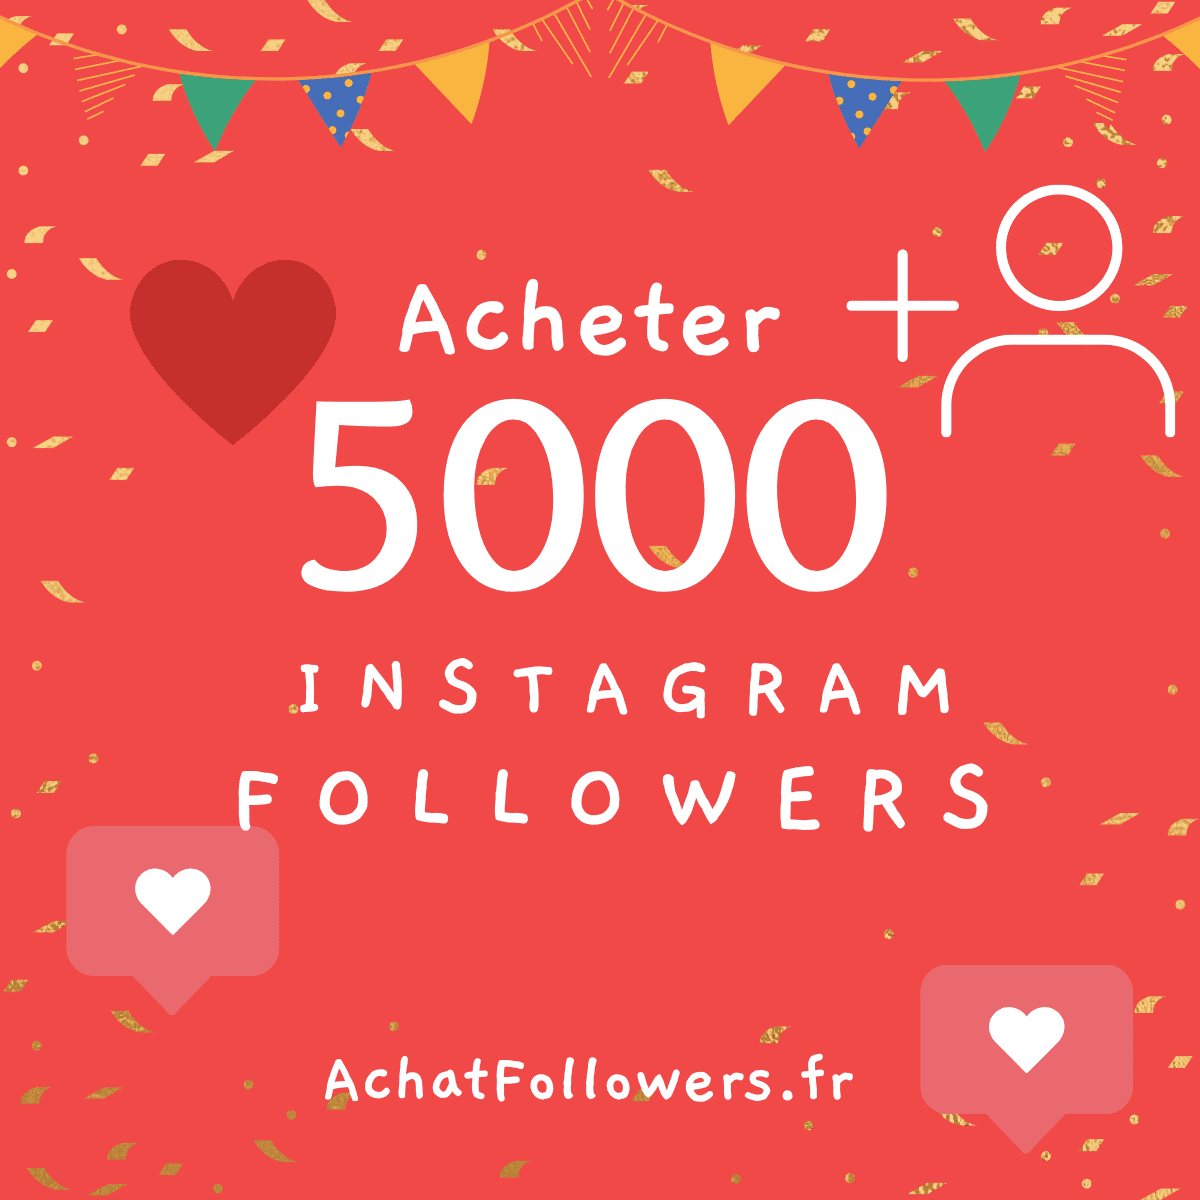 Acheter 5000 Followers Instagram